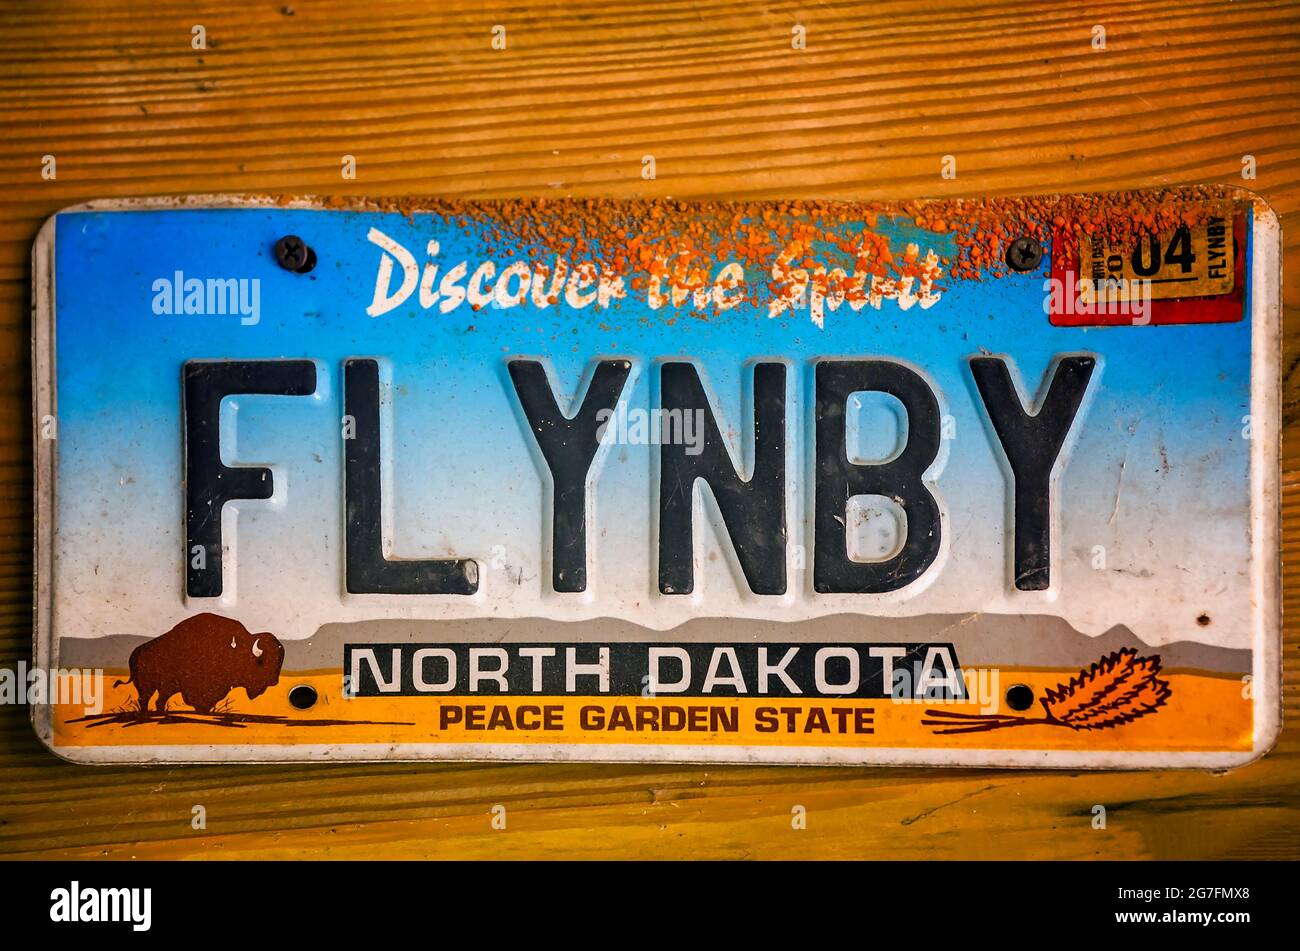 Una targa di cortesia del North Dakota presenta bisonti e il messaggio "flyin' by" presso il Shed Barbeque and Blues Joint di Ocean Springs, Mississippi. Foto Stock